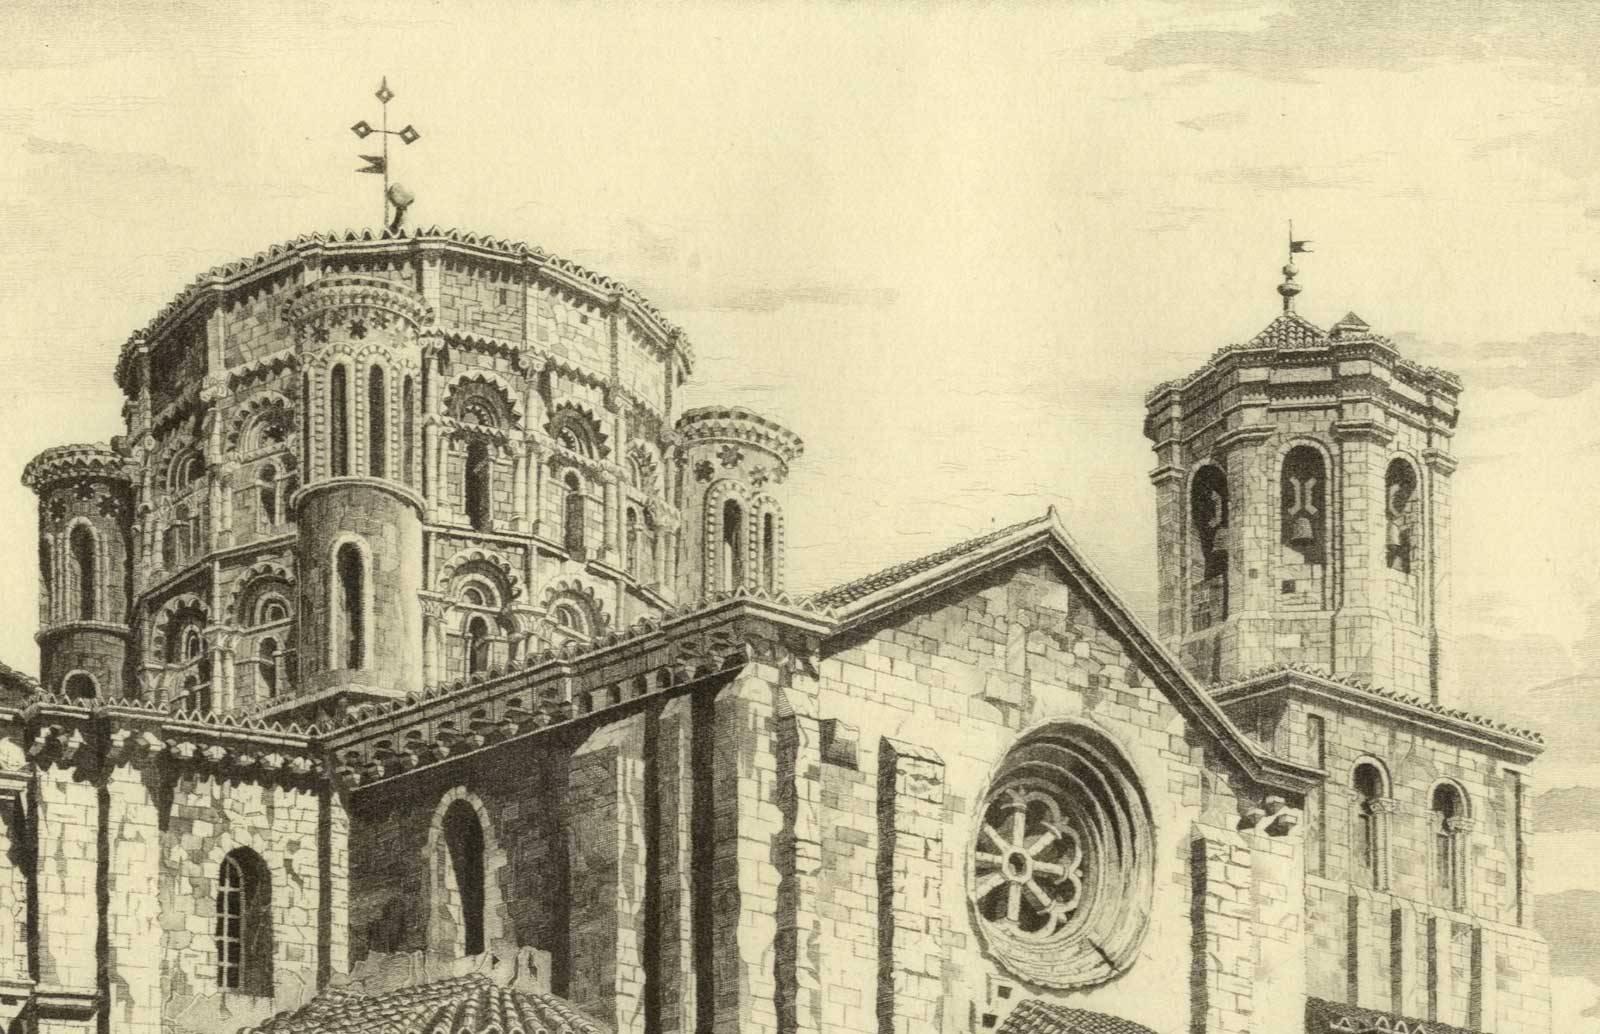 La Colegiata Toro (Romanesque Santa Maria la Mayor/Zamora province Espagne) - Print de John Taylor Arms